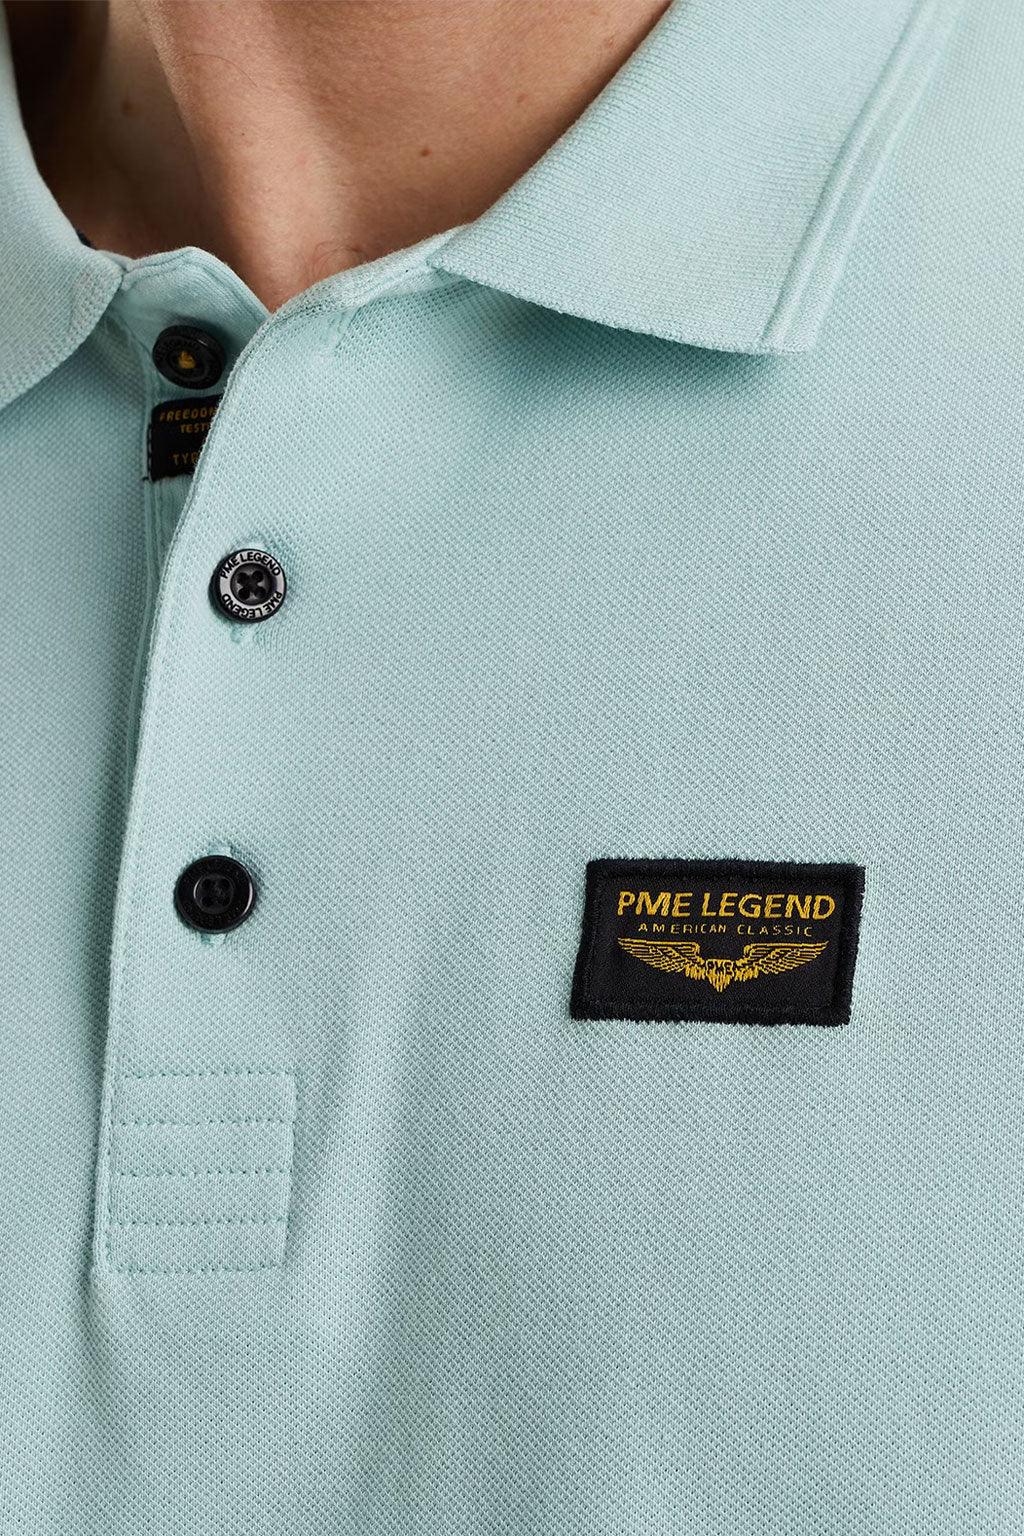 PME Legend polo - Big Boss | the menswear concept